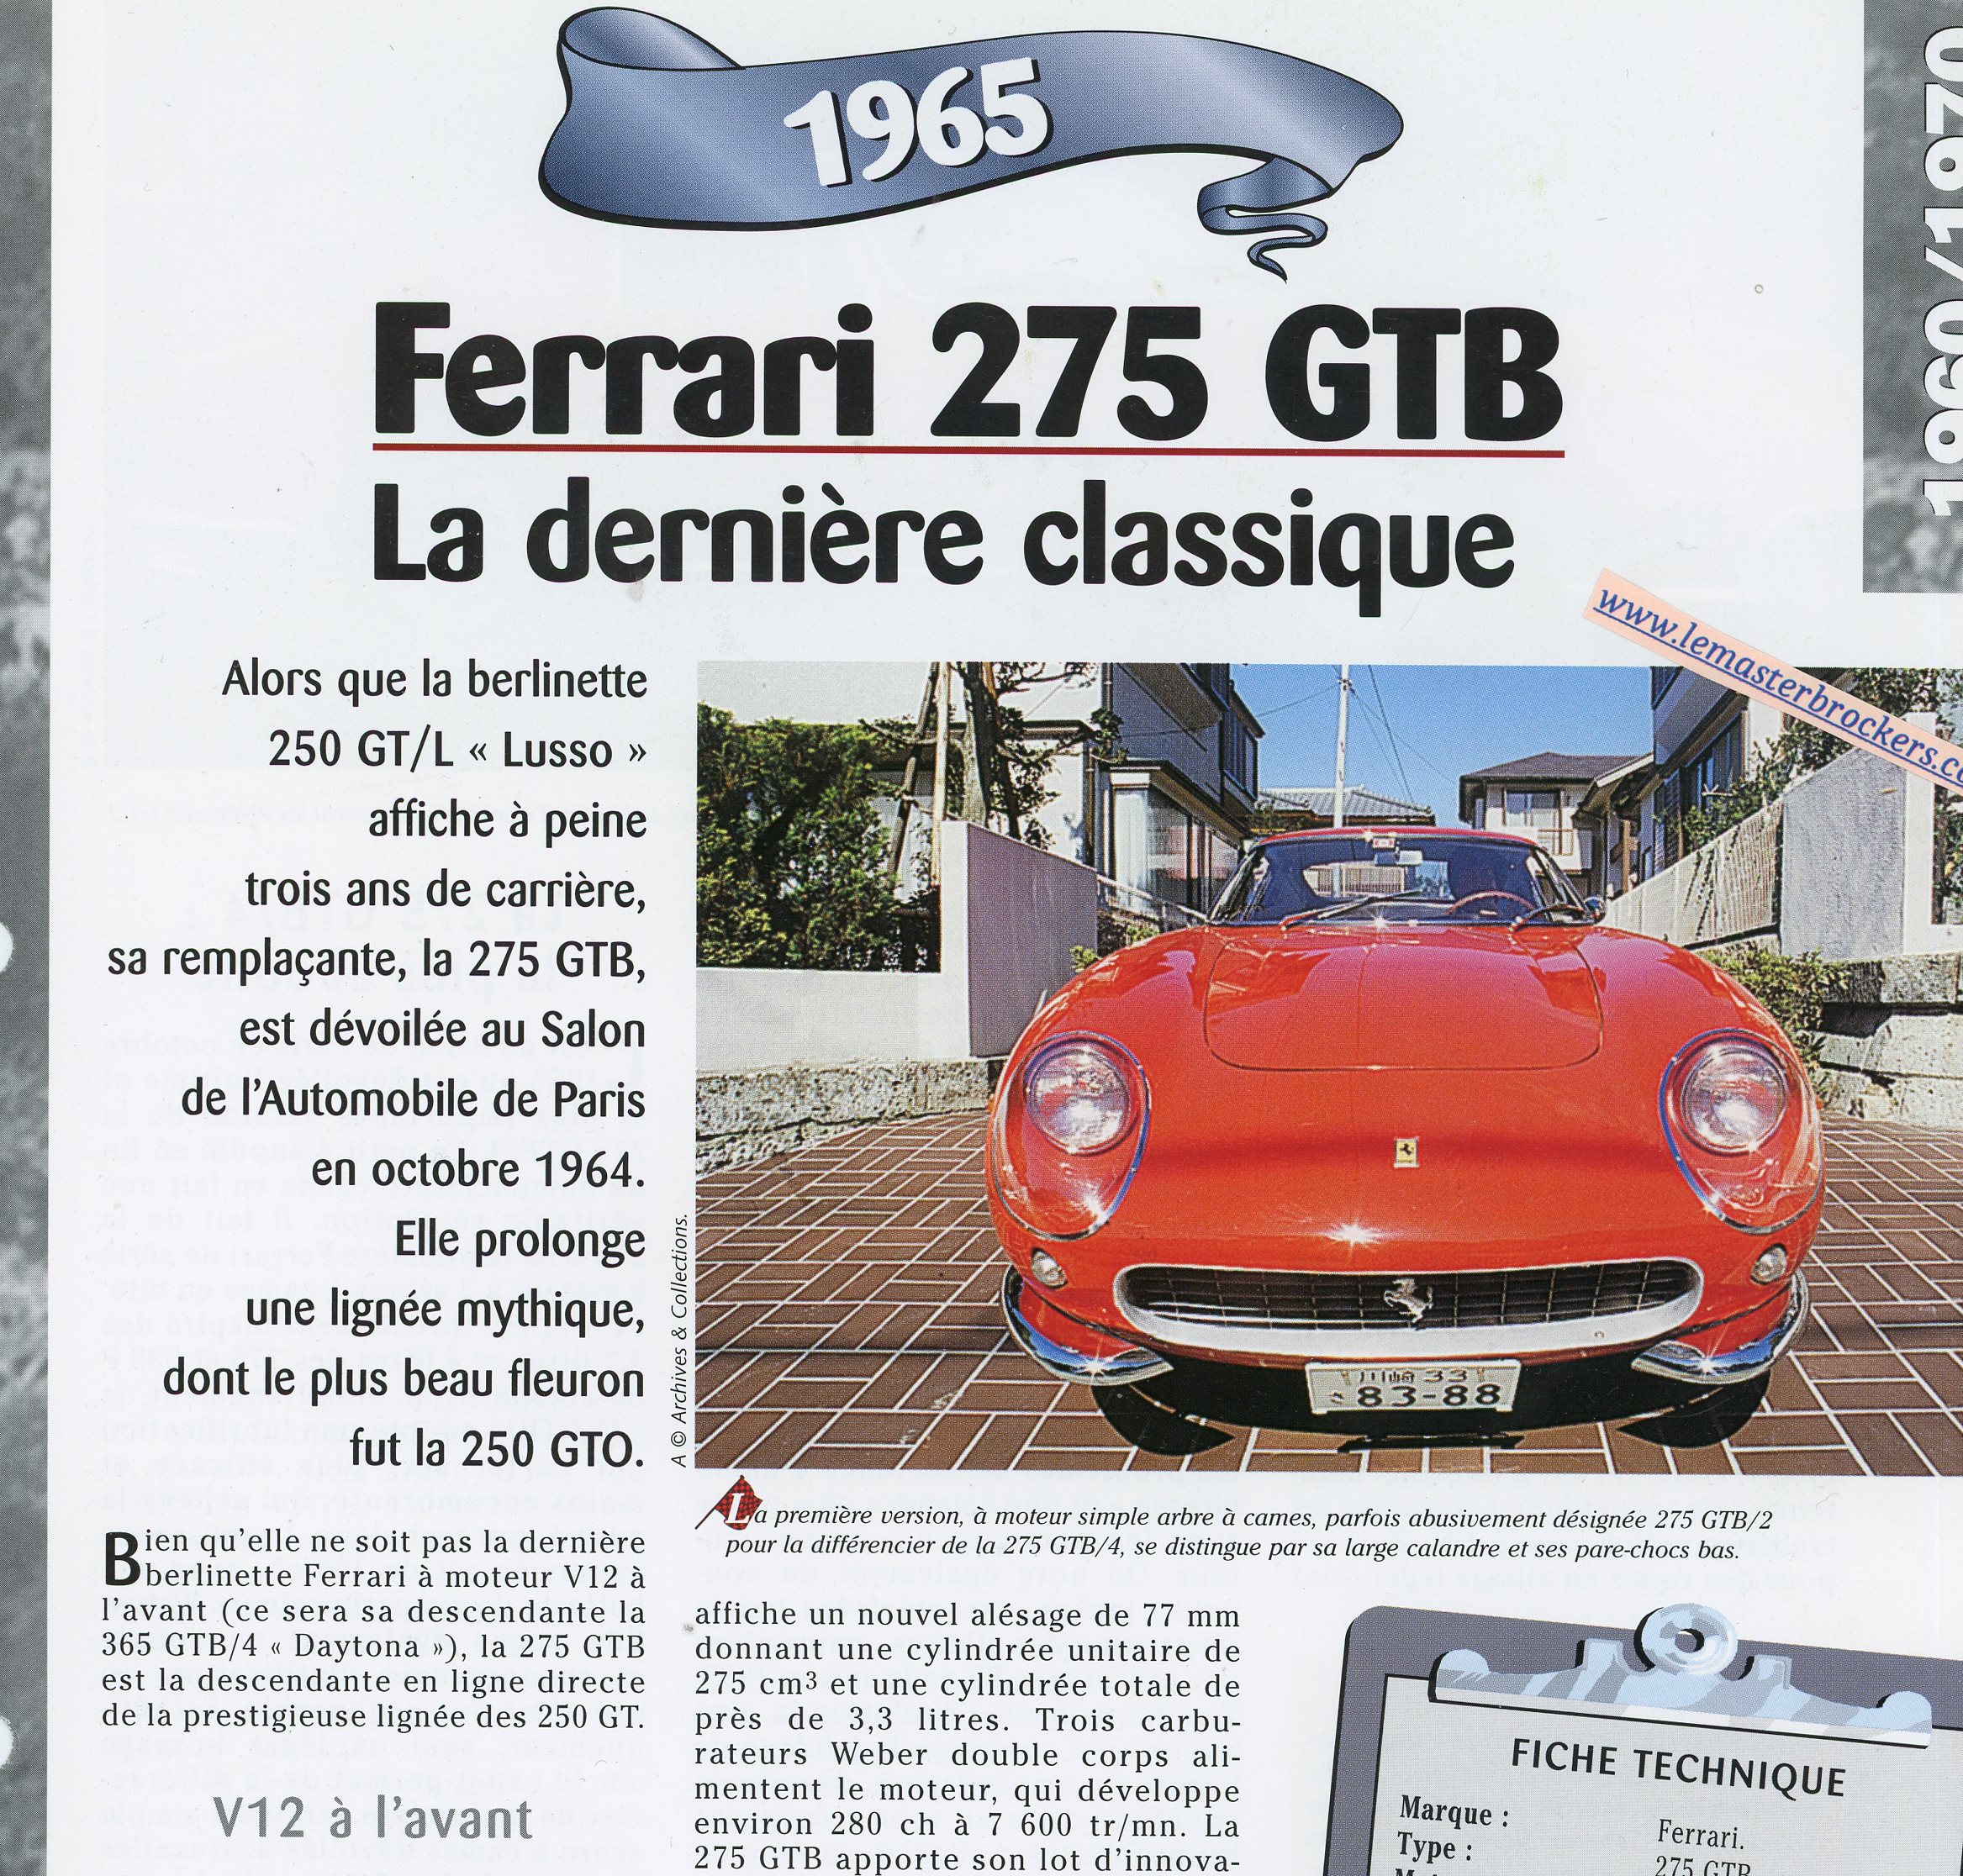 FERRARI-275-GTB-BERLINETTA-1965-FICHE-TECHNIQUE-LEMASTERBROCKERS-CARS-CARD